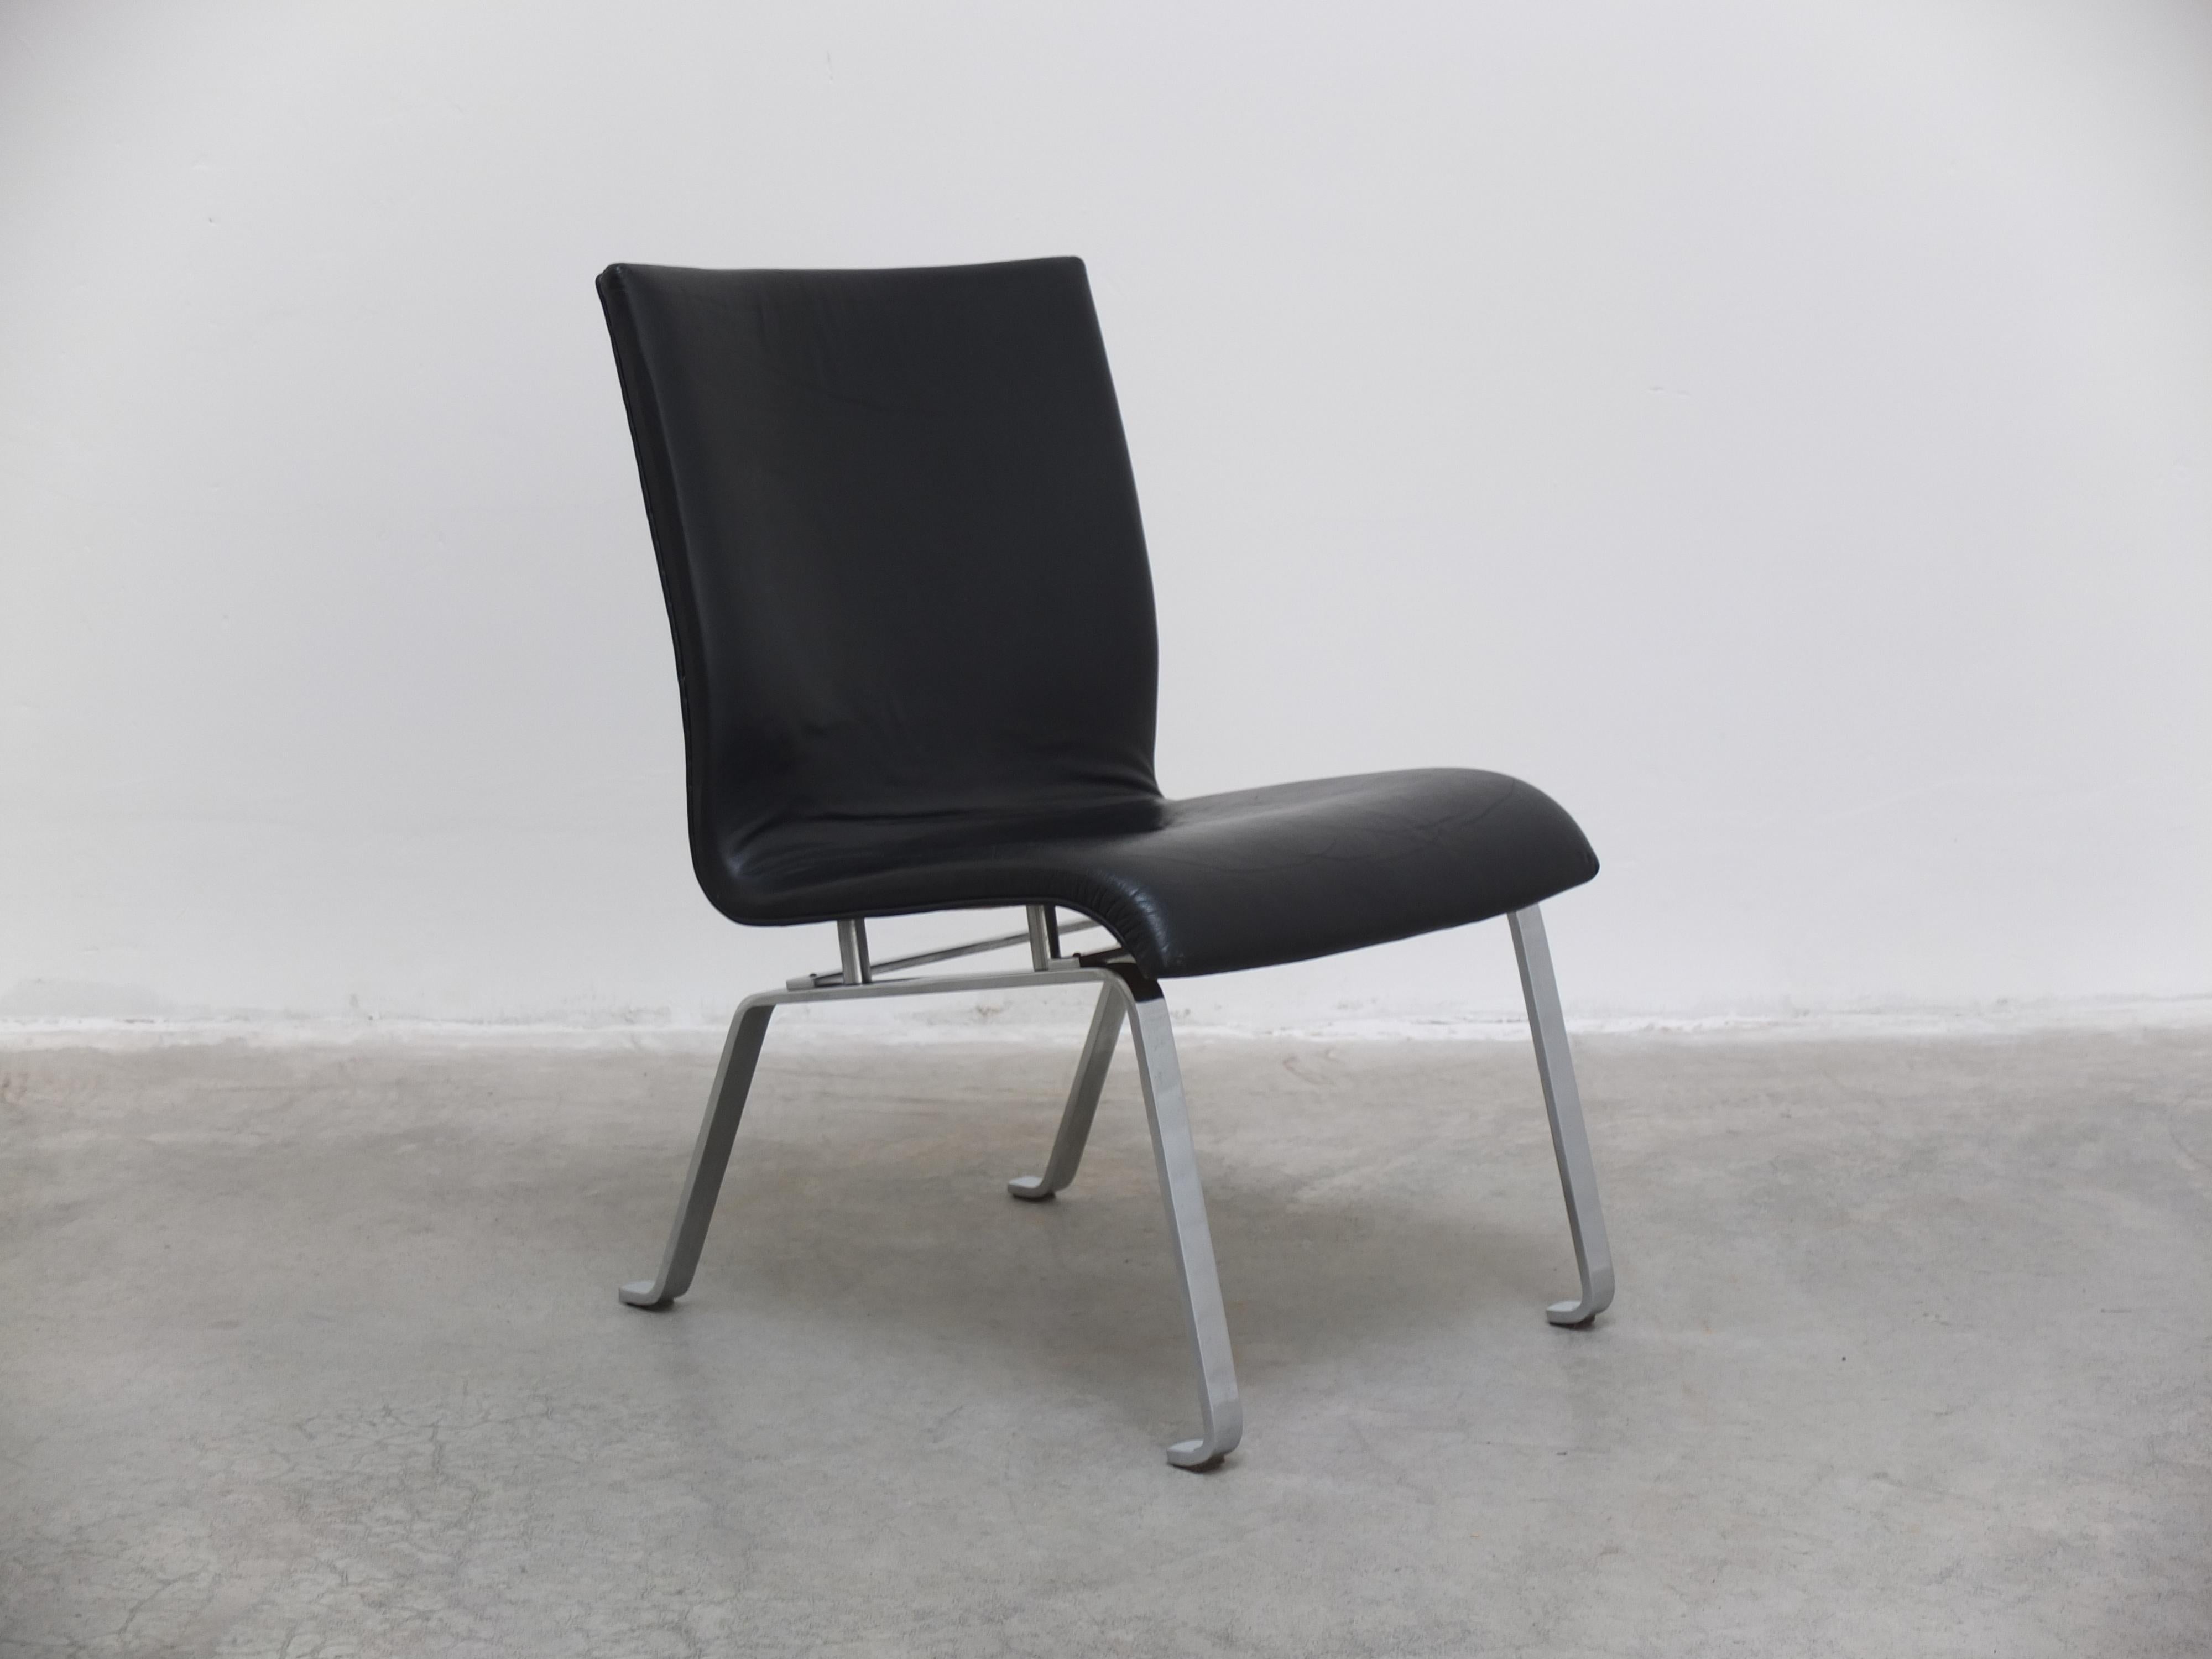 Cette chaise de salon moderniste produite au Danemark vers 1960 est une trouvaille exceptionnelle. Fabriqué en cuir noir véritable combiné à une base en acier plat chromé. Ce design minimaliste présente des similitudes avec les œuvres d'architectes